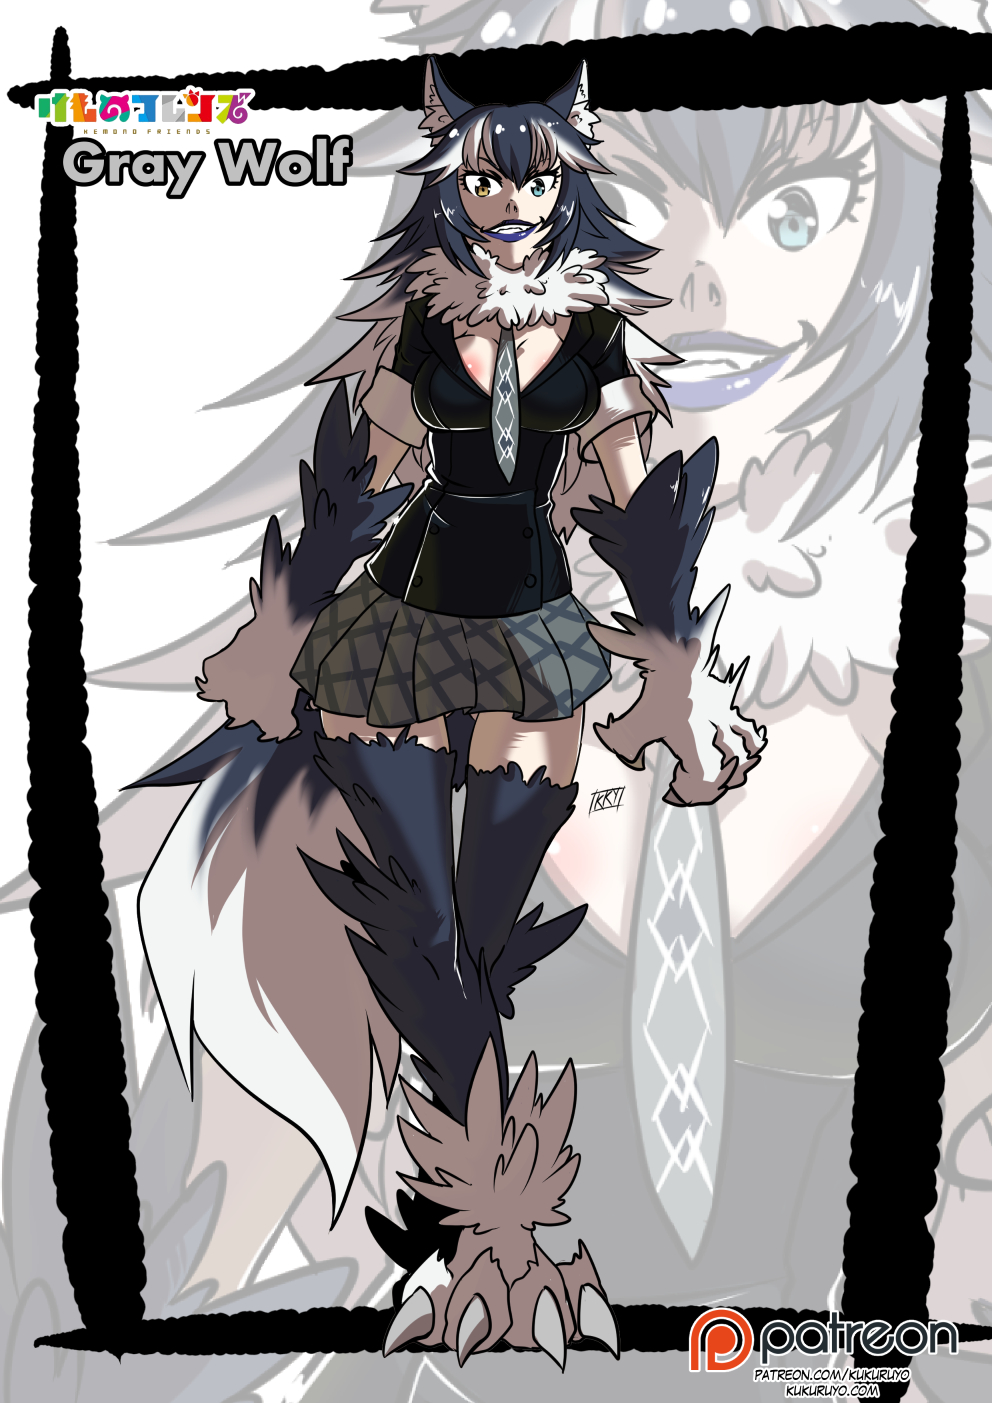 Monster Girl Wolf